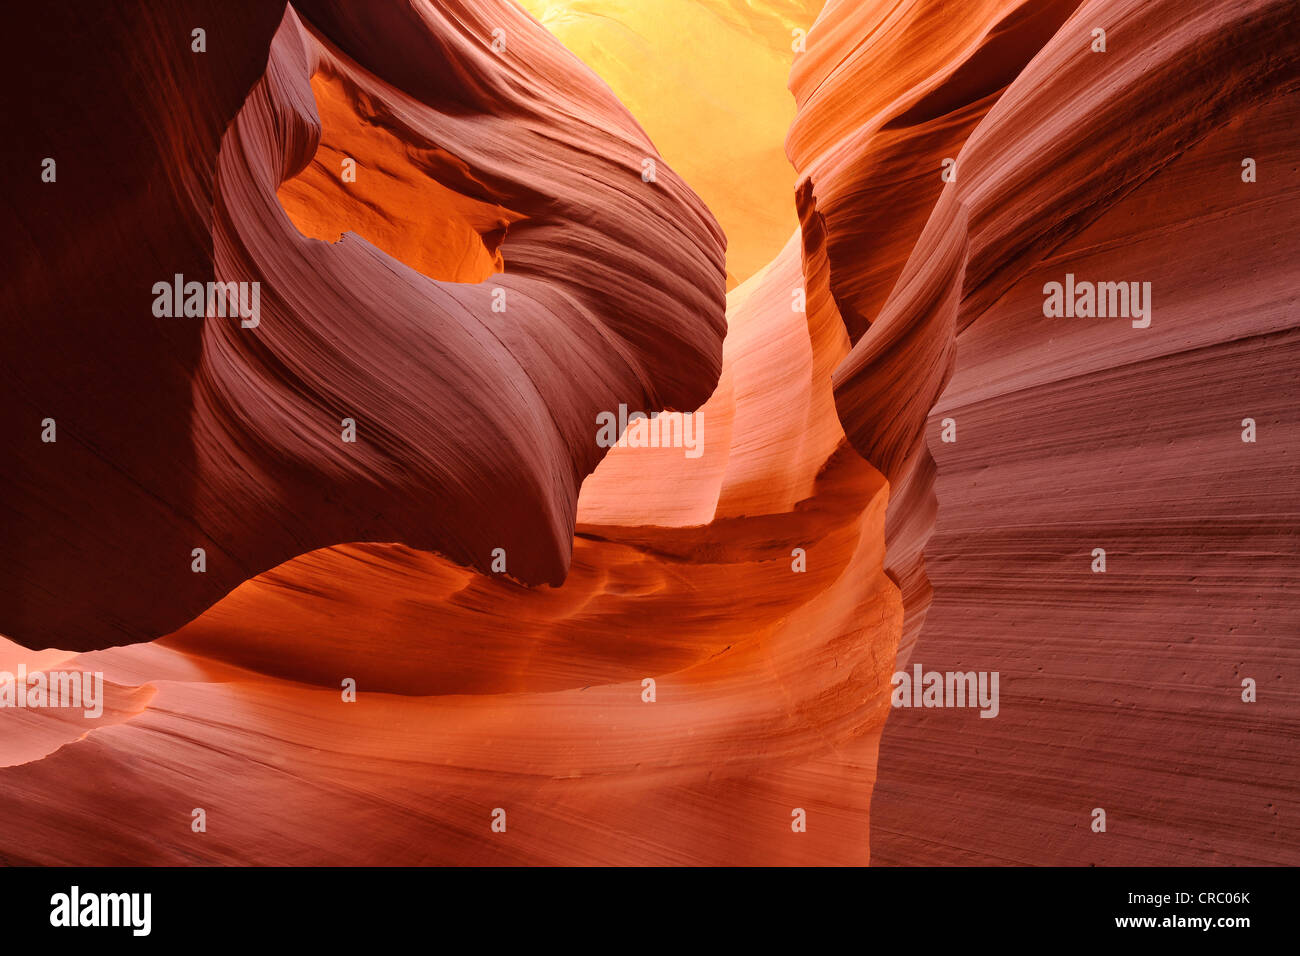 Rock-Formation Lady im Wind, roter Sandstein Moenkopi-Formation, Felsformationen, Farben und Texturen in der unteren Stockfoto